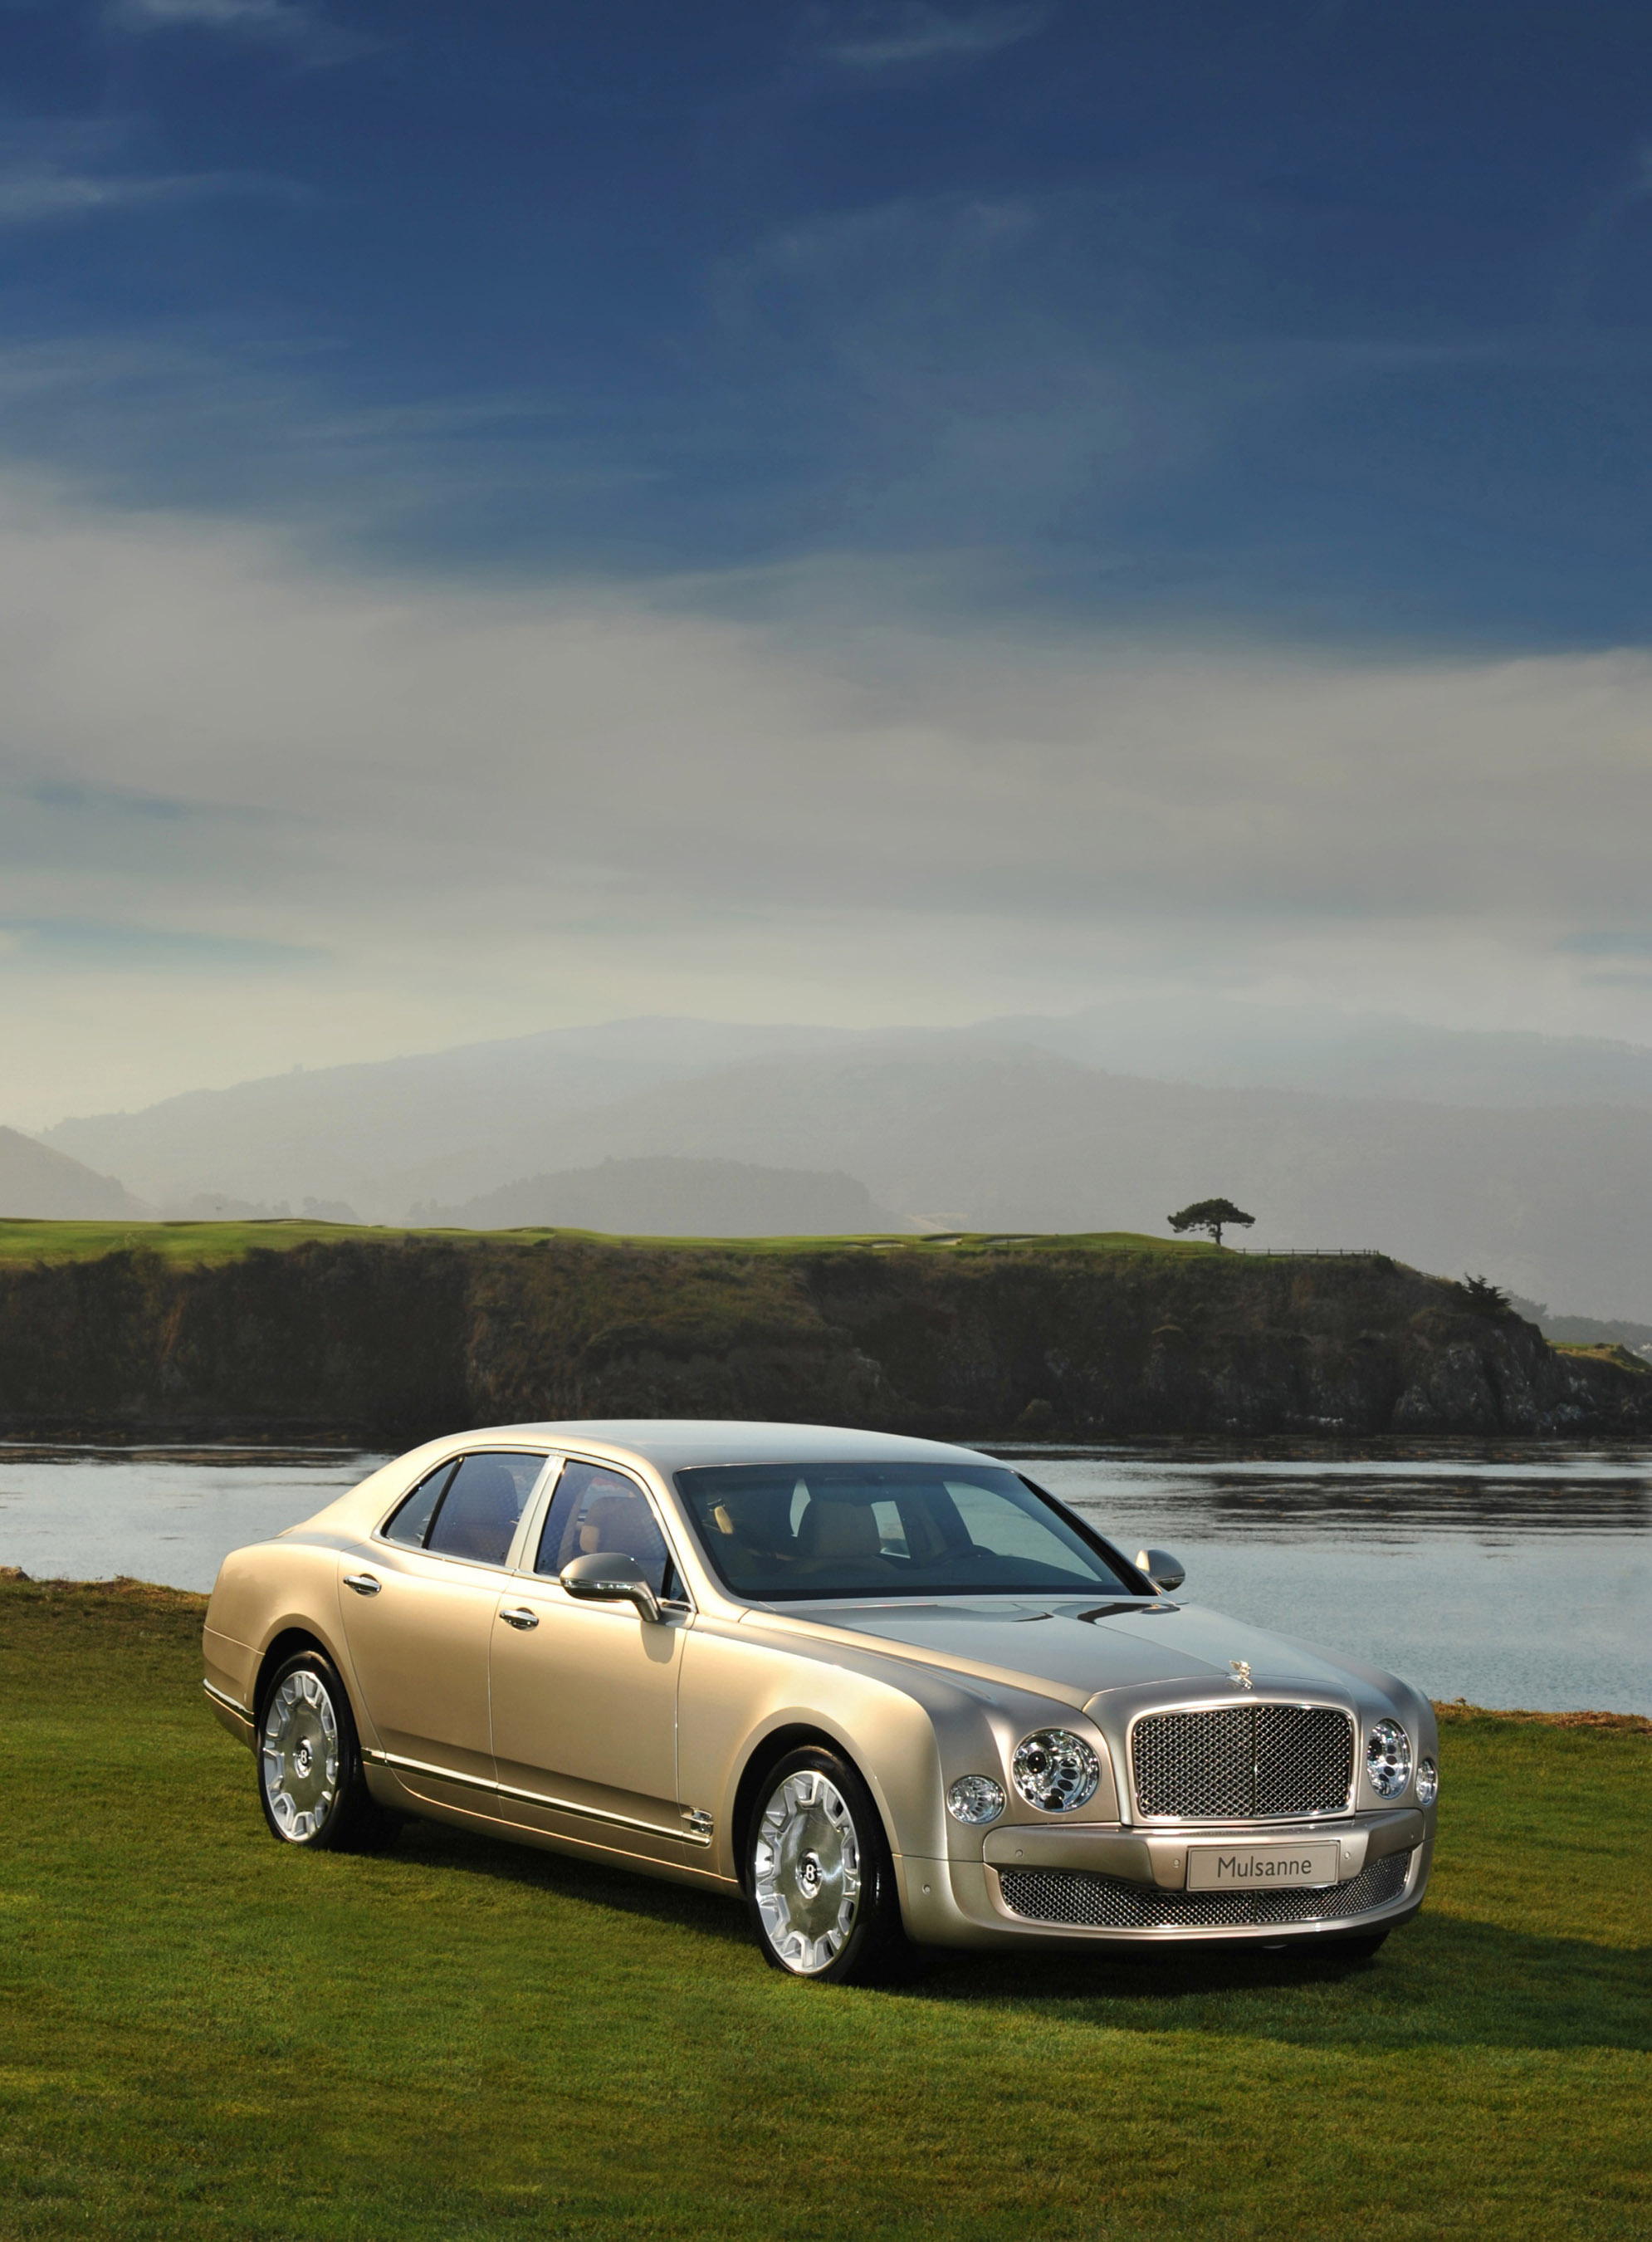 Bentley Mulsanne, Luxury car, HD picture, 2010 model, 1990x2700 HD Phone